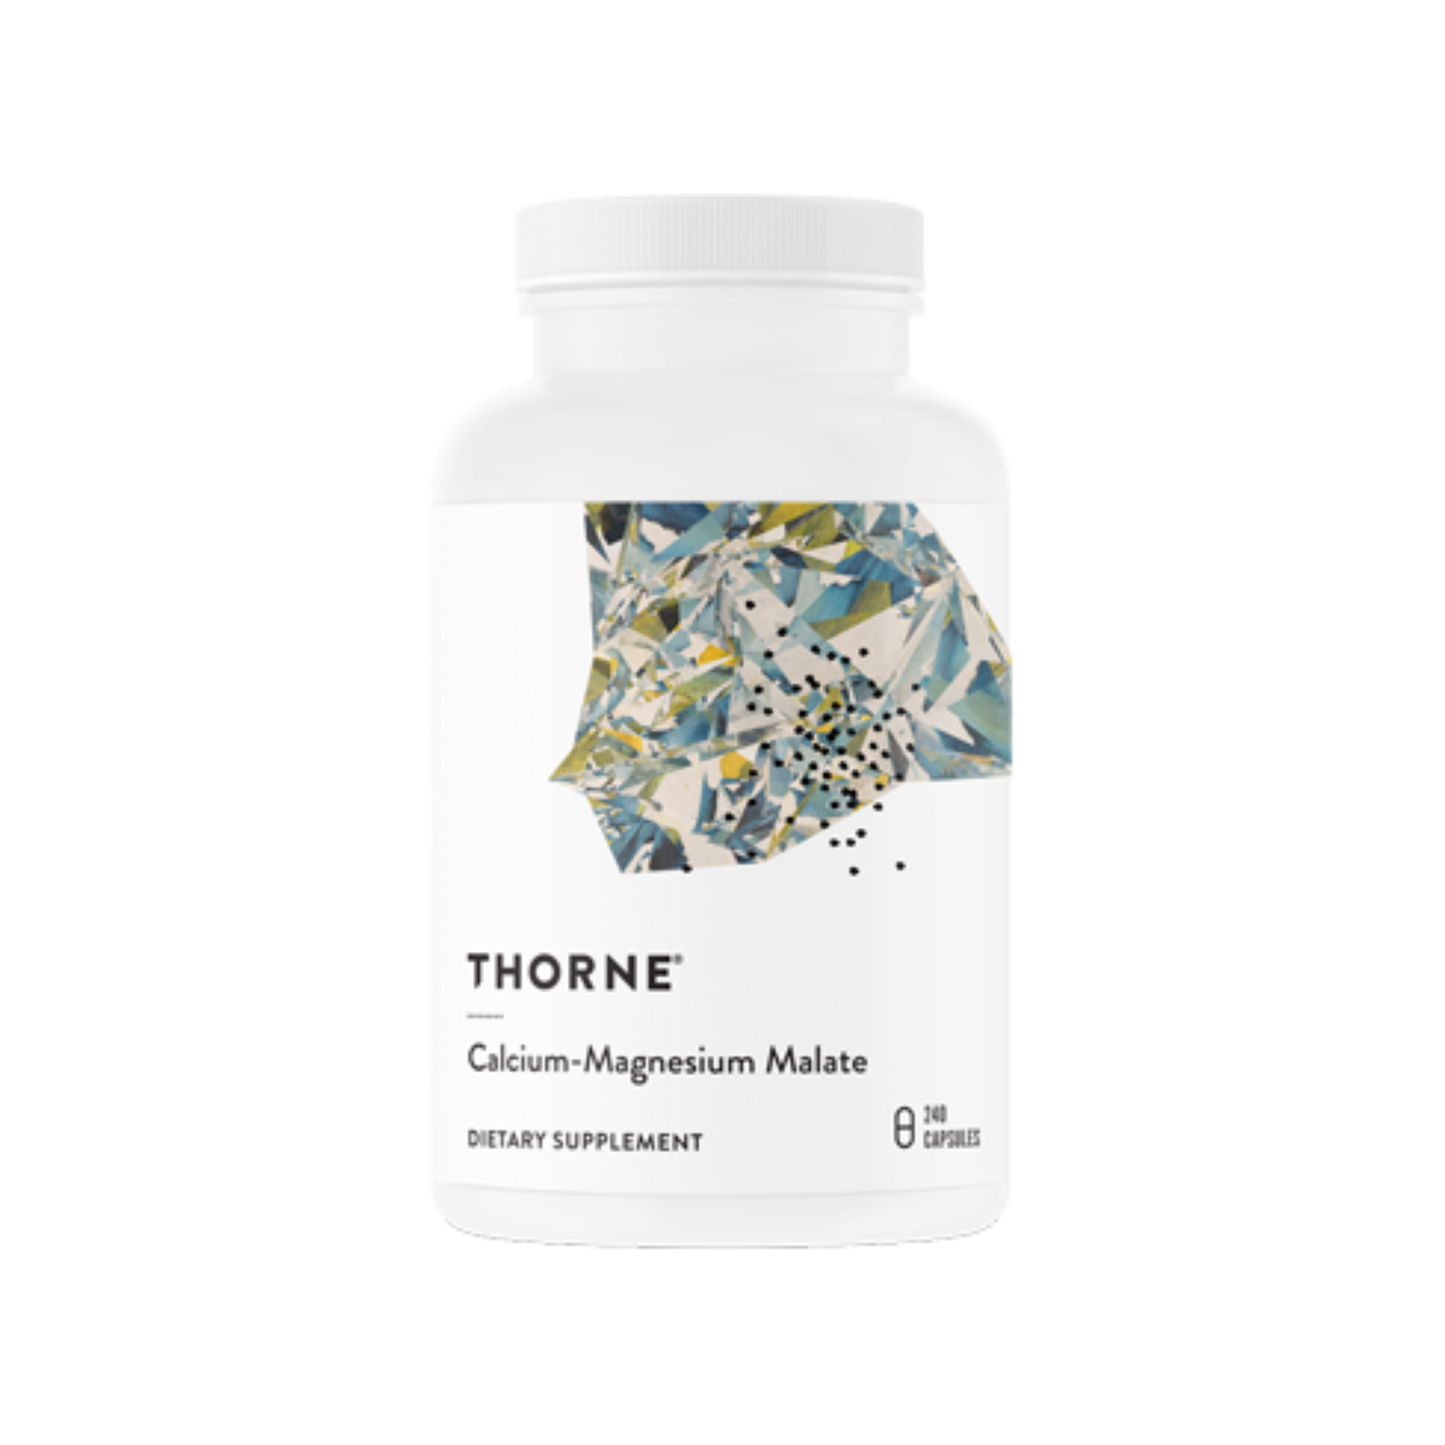 Thorne - Calcium-Magnesium Malate